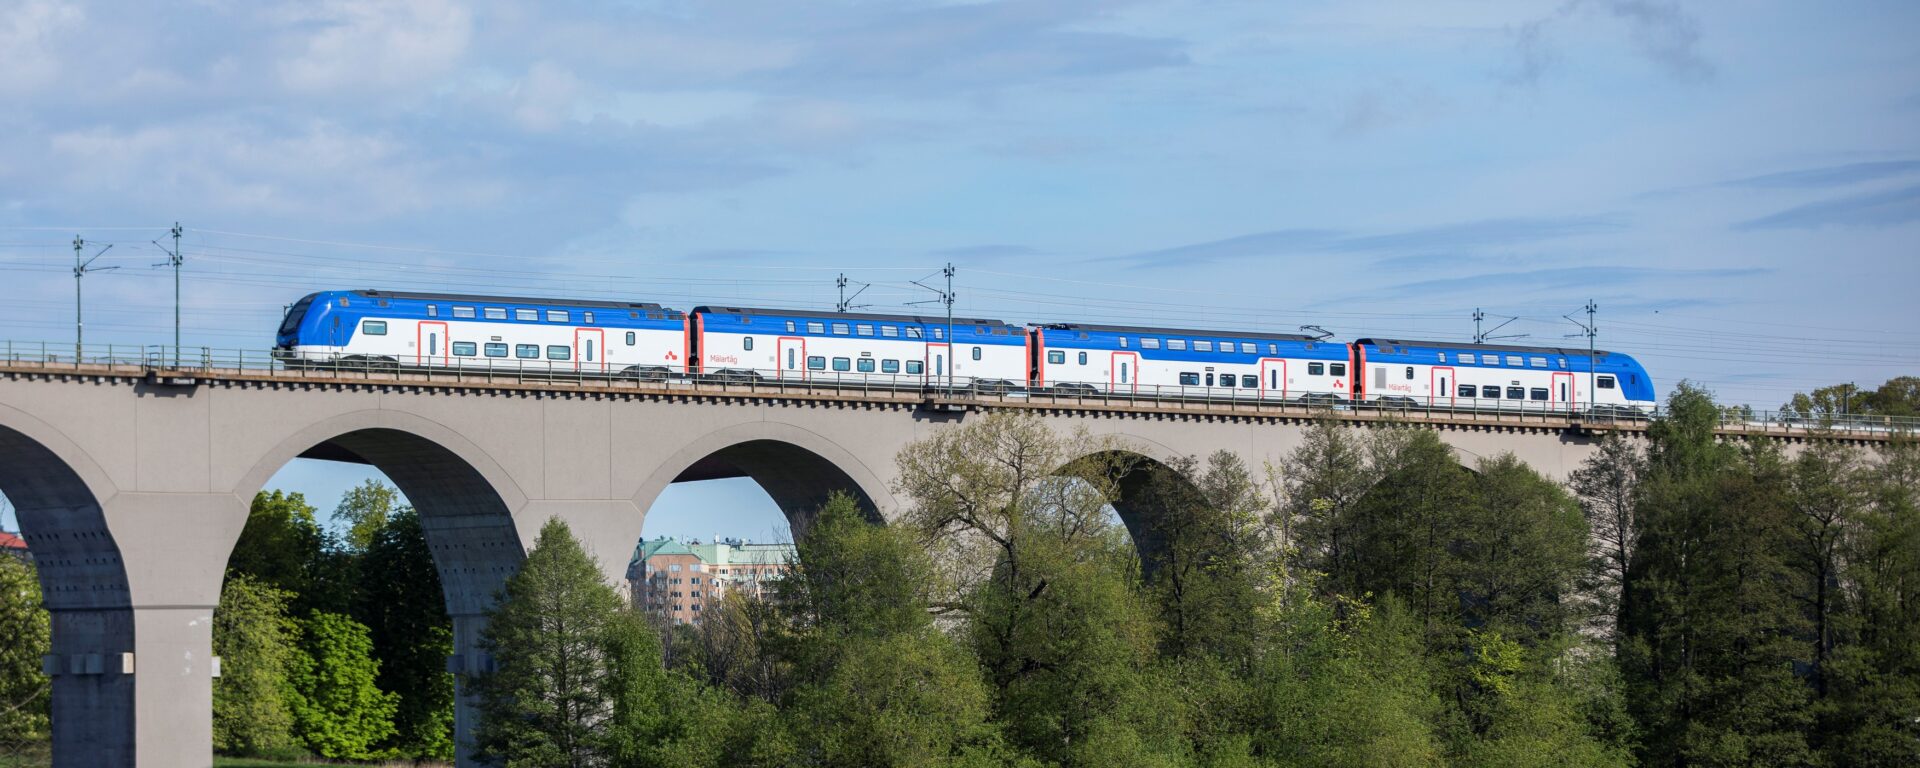 Transdev Sweden train Mälartag